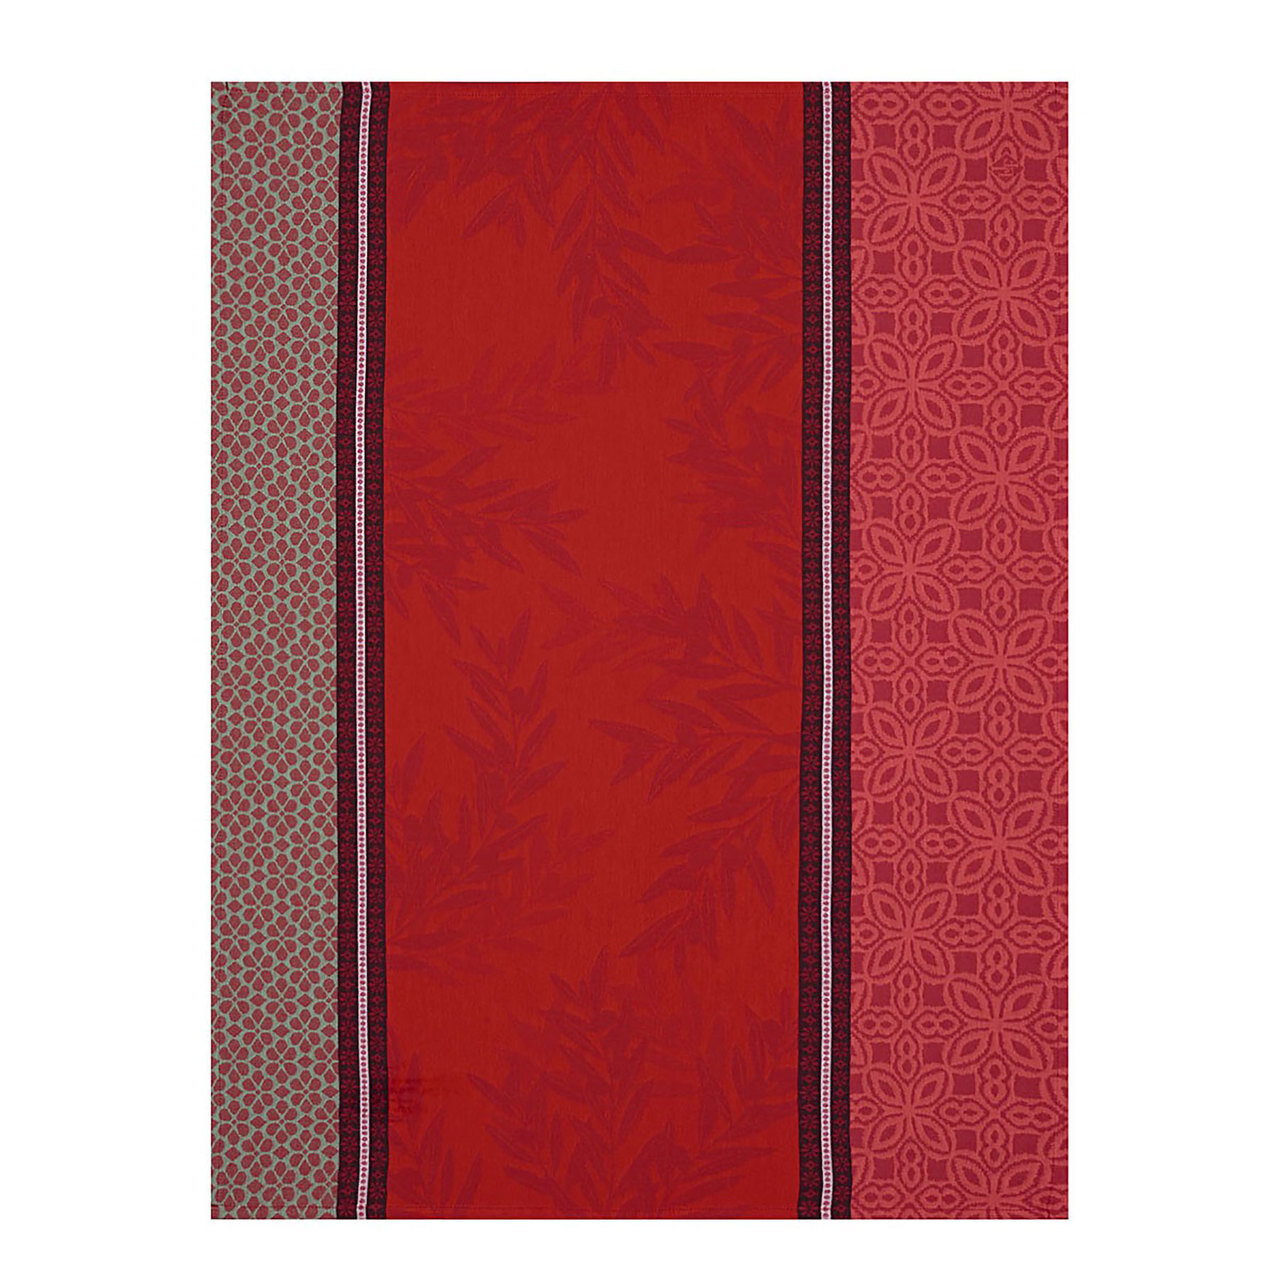 Le Jacquard Luberon Red Tea Towel 24x31 Set of 4